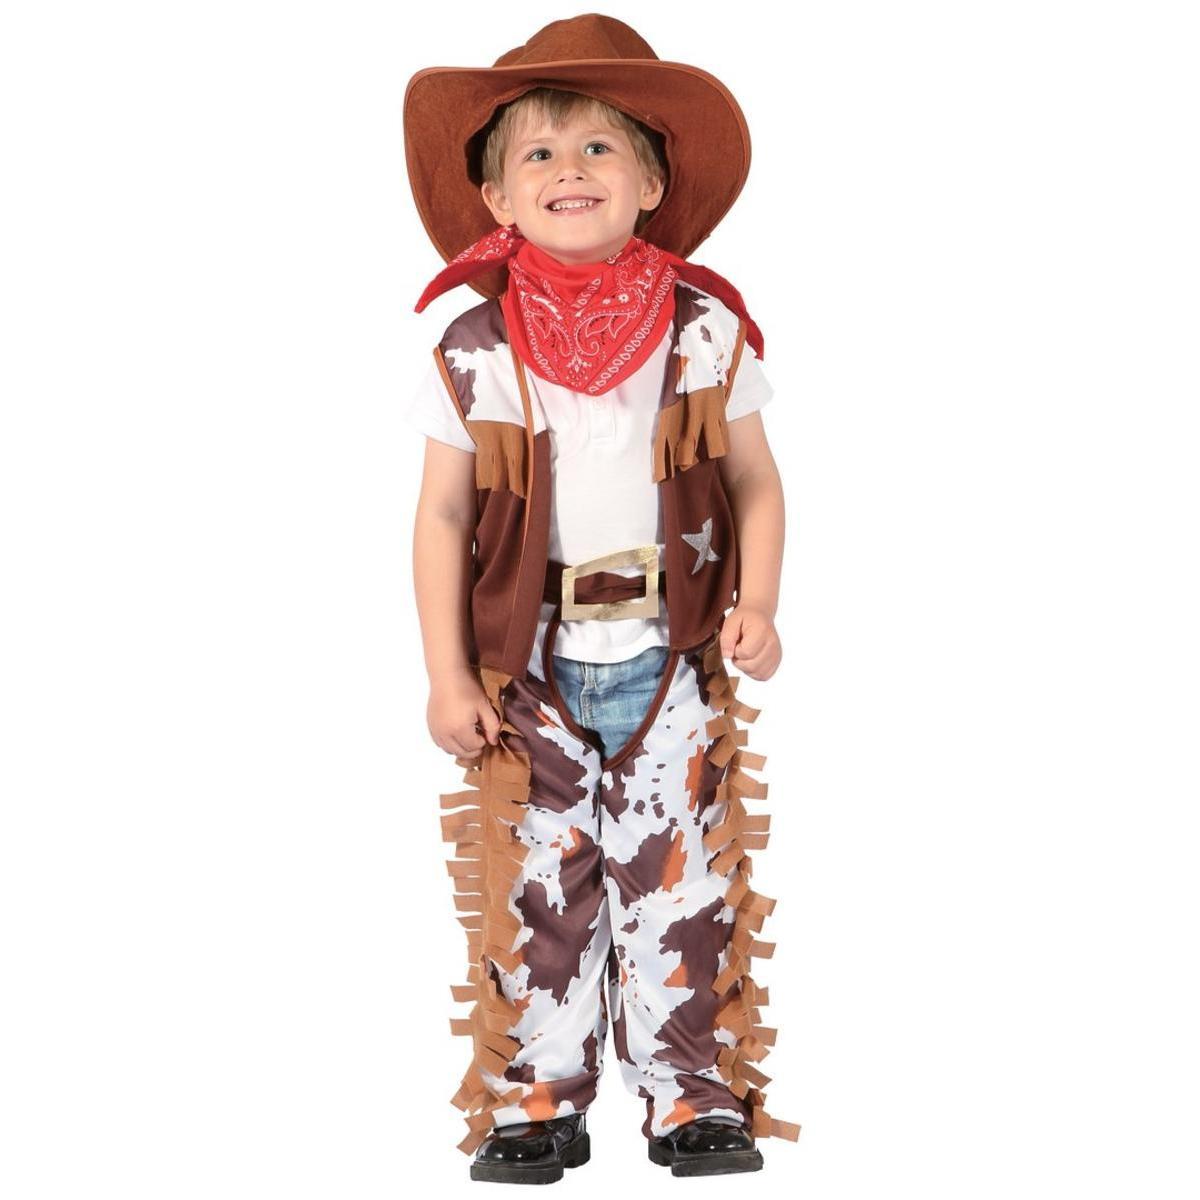 Costume de Cow-Boy - Taille bébé (92 à 104 cm) - L 48 x H 3 x l 44 cm - Multicolore - PTIT CLOWN